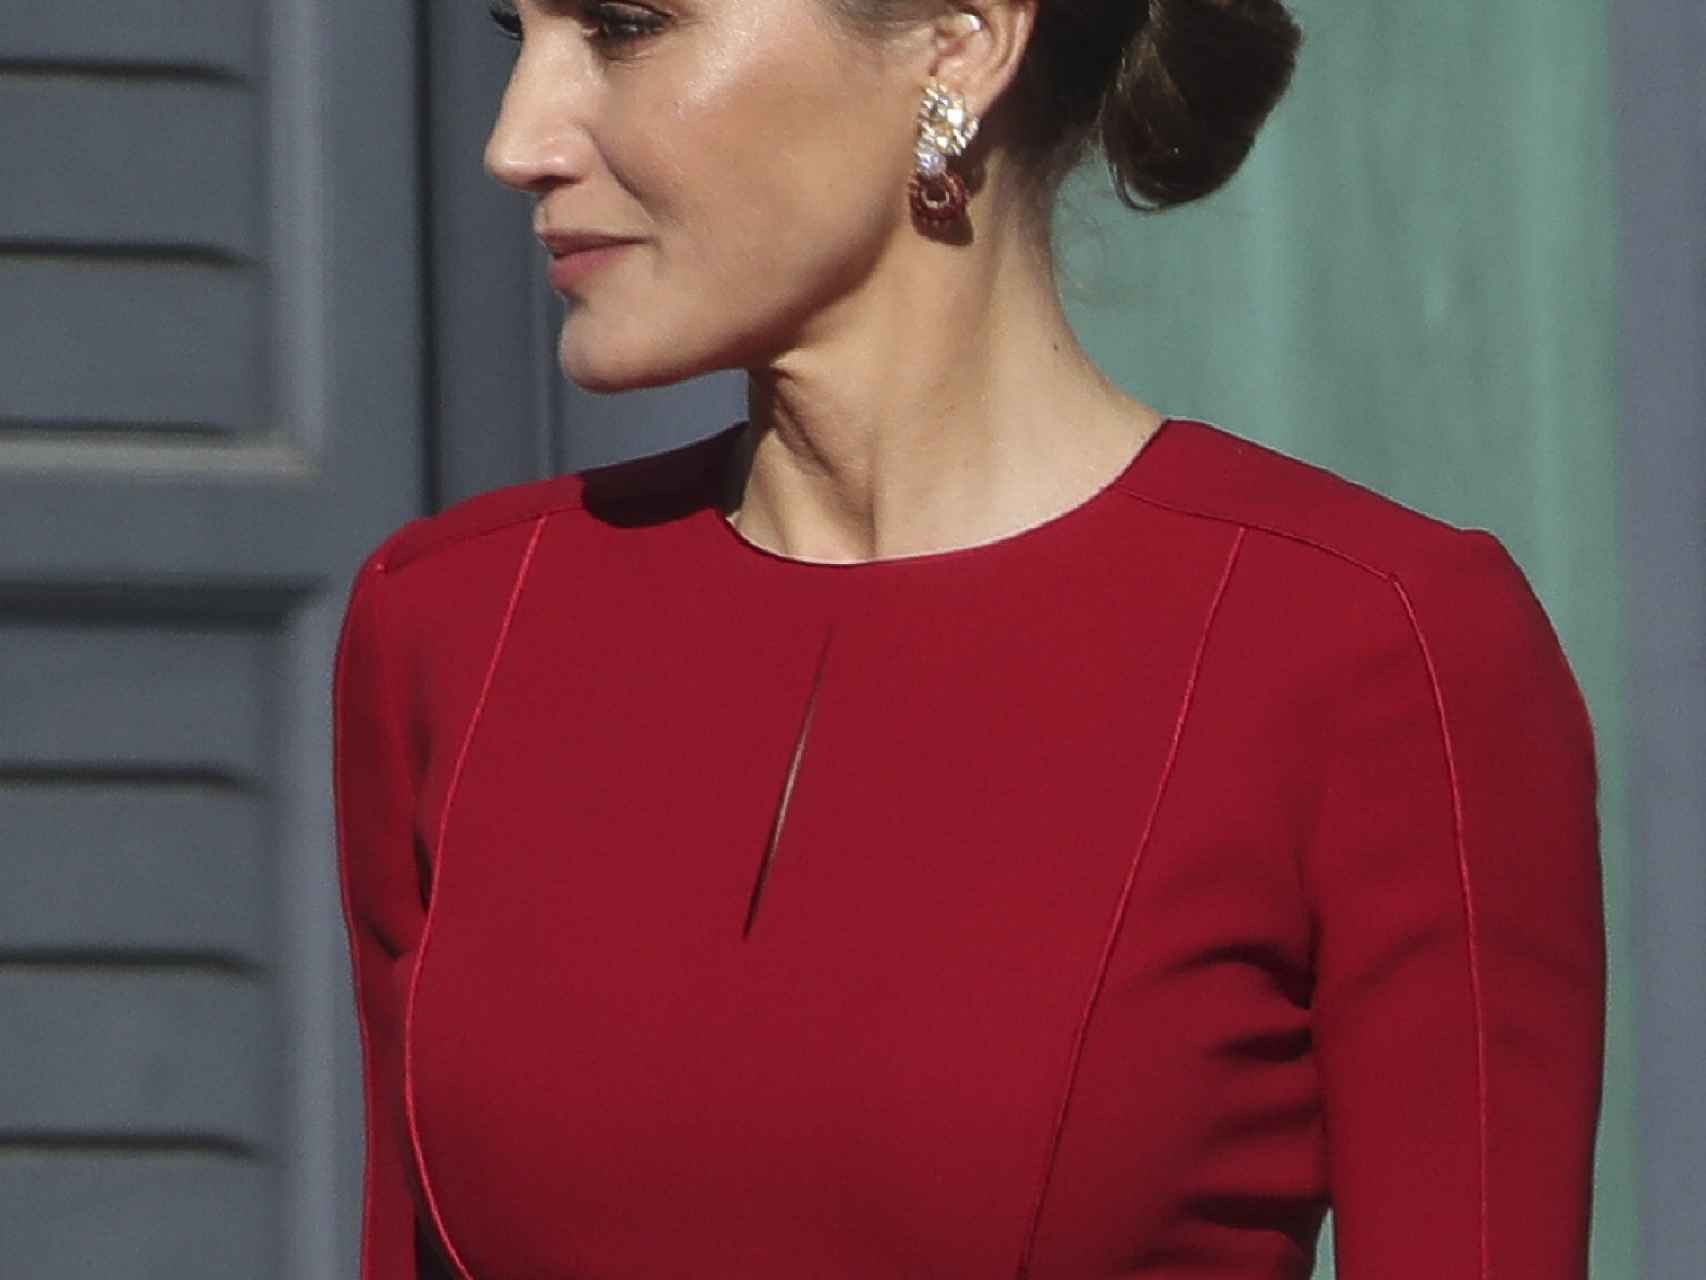 La reina ha lucido sus pendientes de brillantes y rubíes con un recogido de su melena.